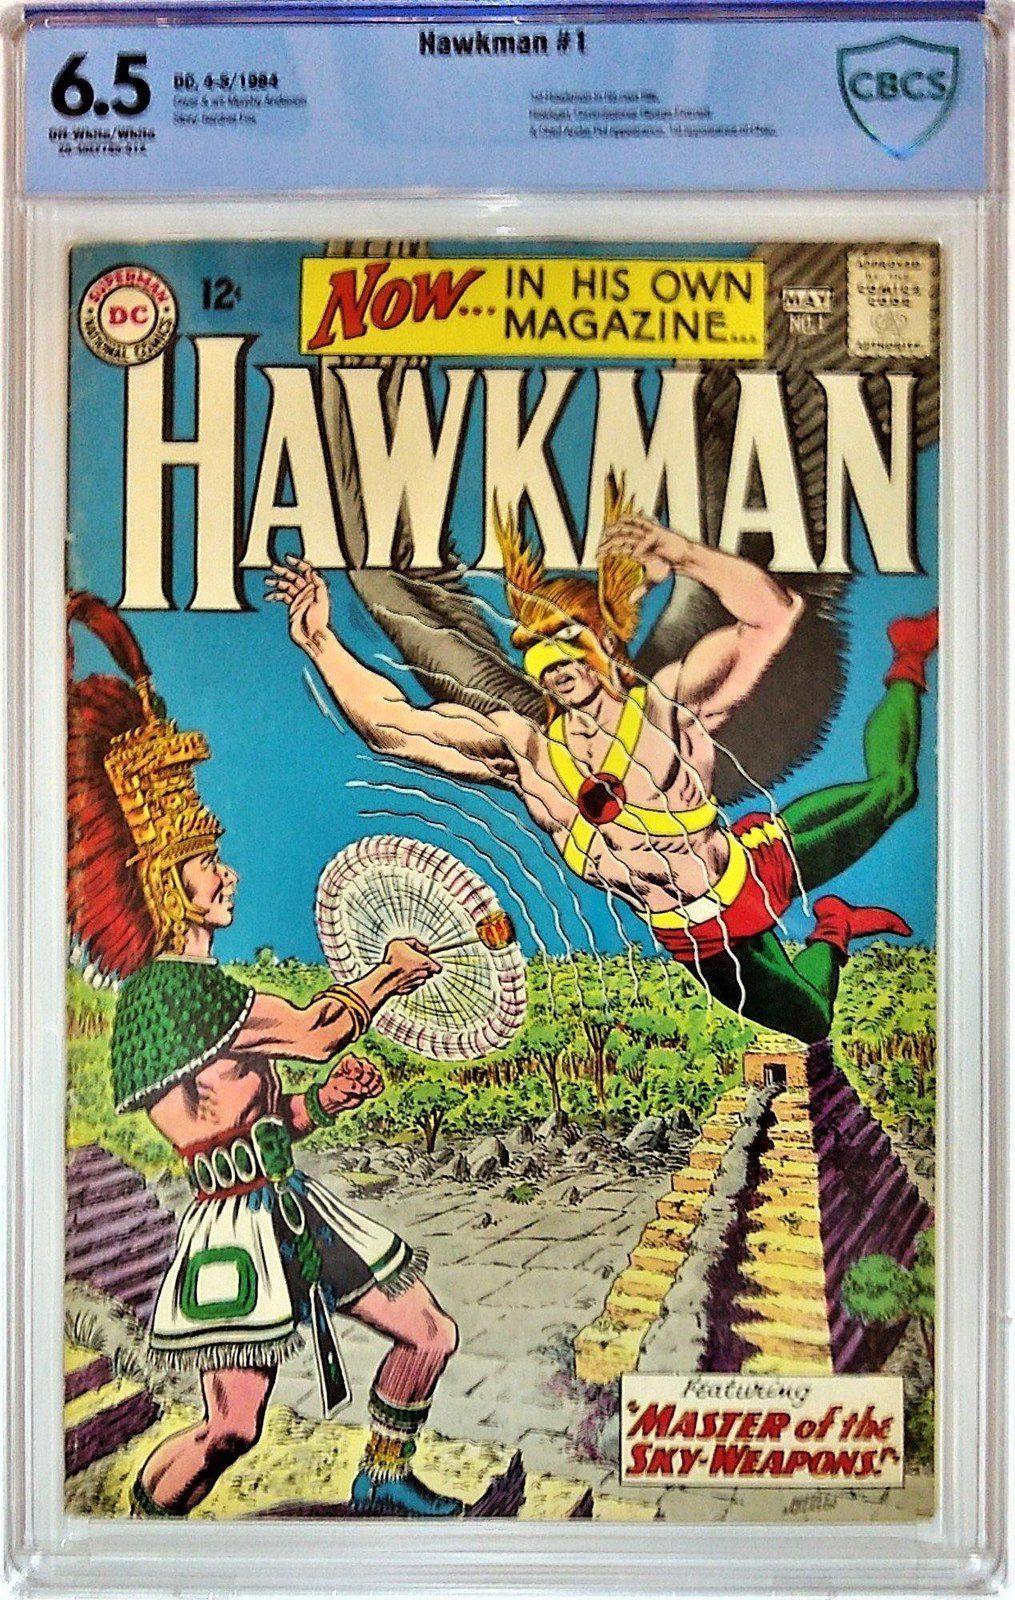 HAWKMAN #1 CBCS 6.5 - PCKComics.com